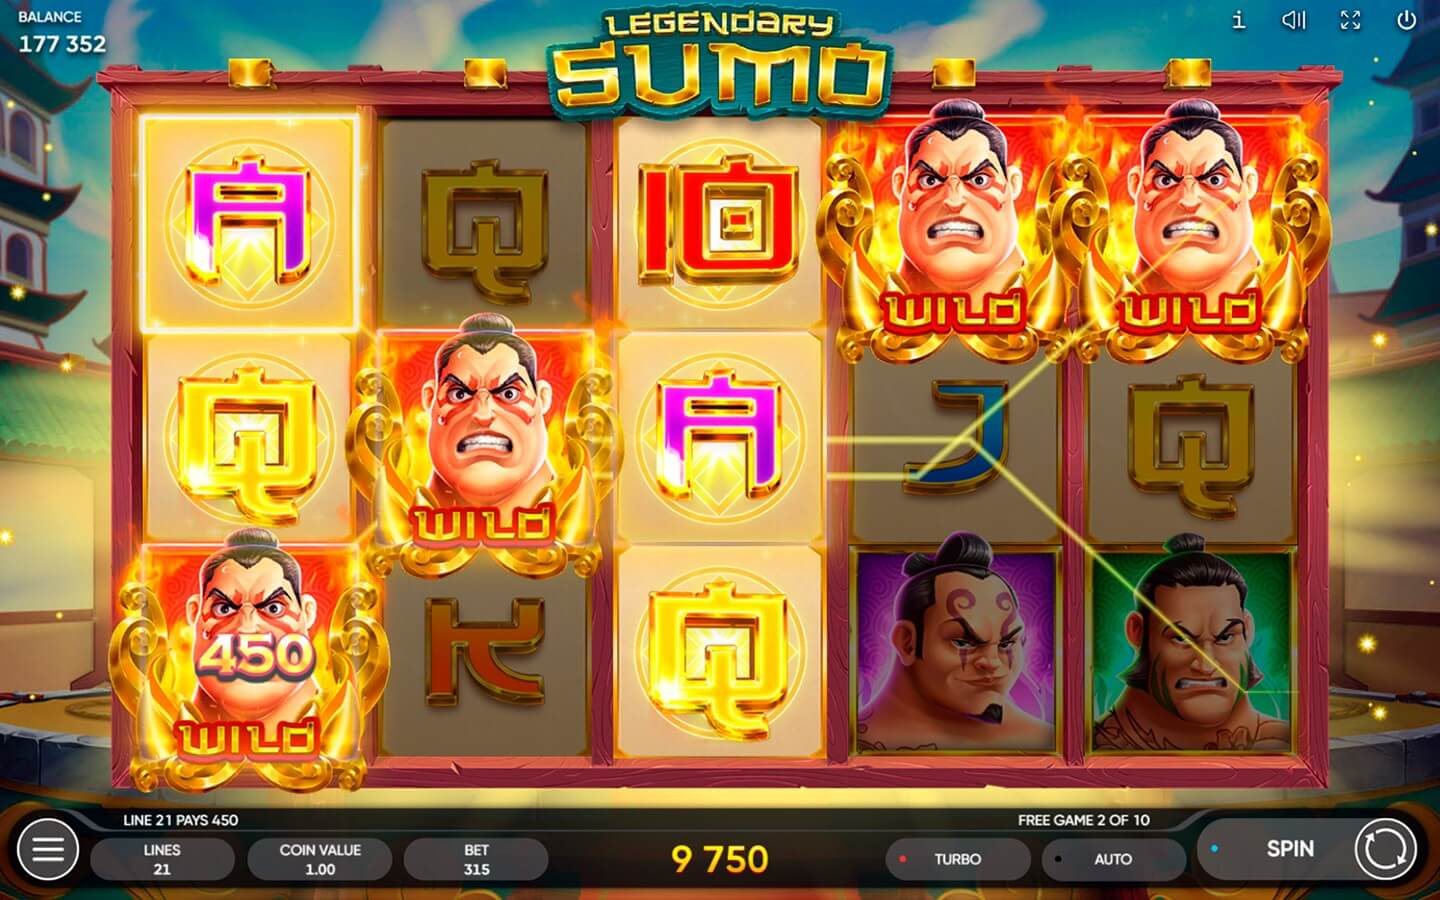 Legendary sumo